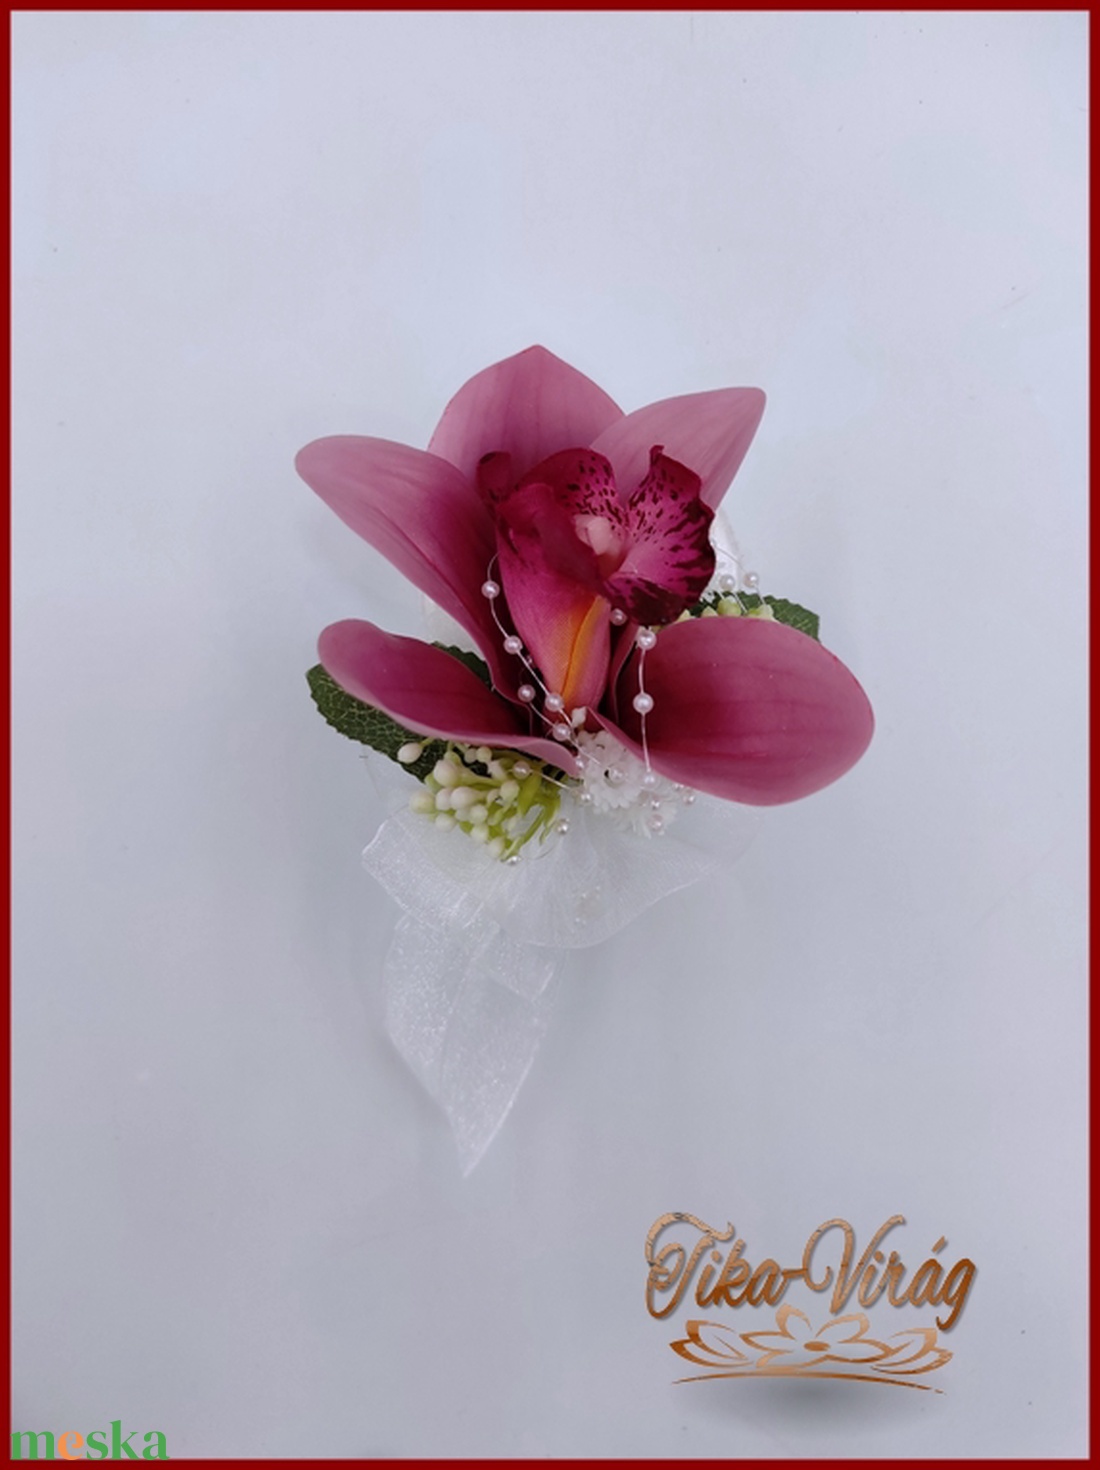 Vintage stílusú Mályva orchideás-fehér boglárkás, rózsás örök-csokor + kitűzővel - esküvő - menyasszonyi- és dobócsokor - Meska.hu